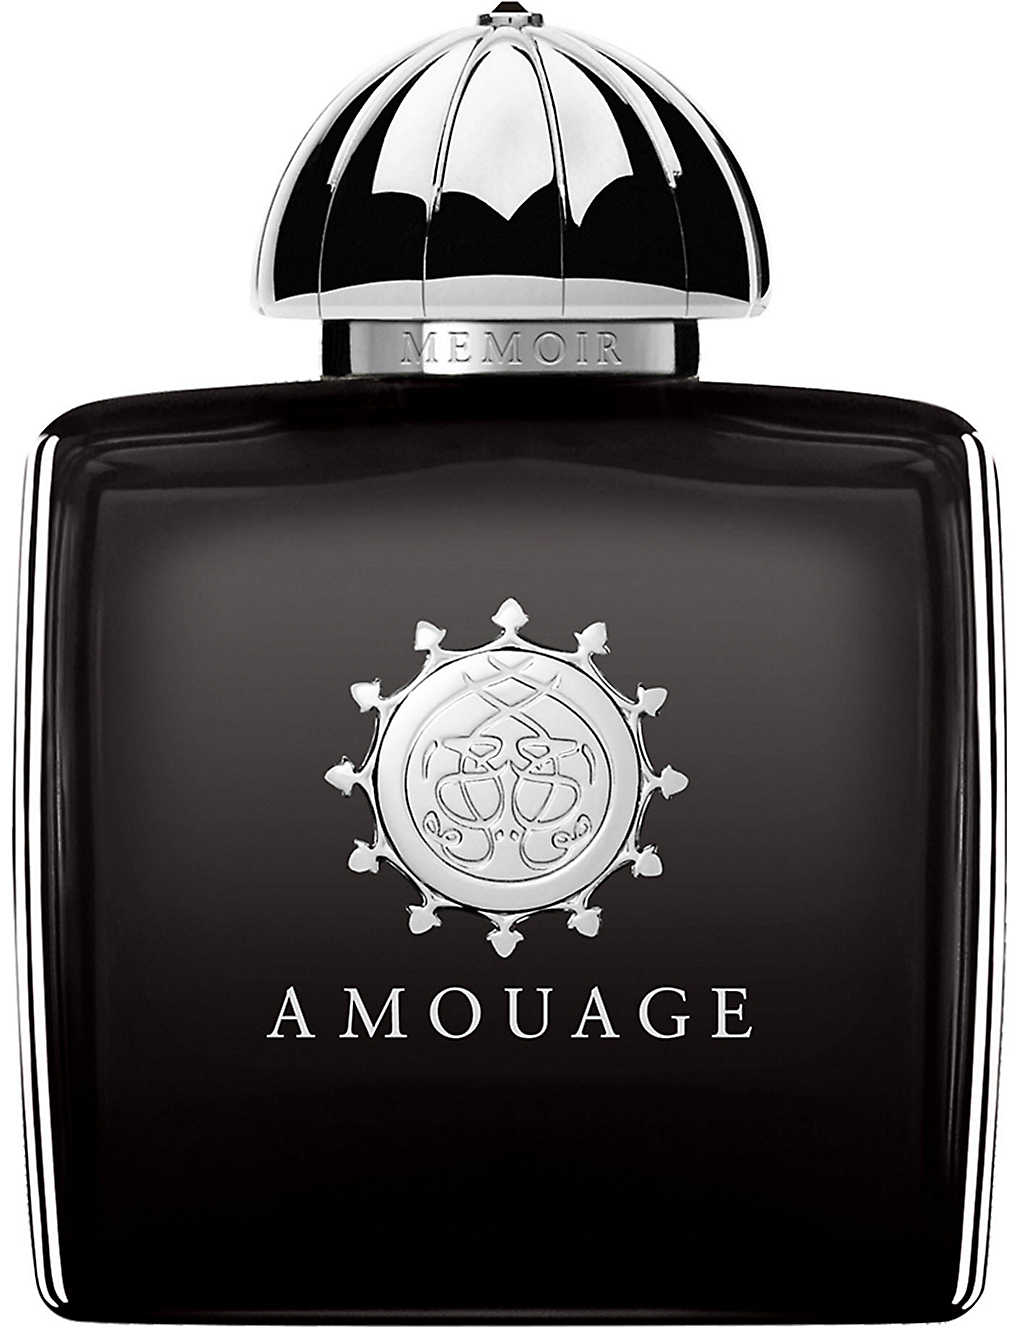 AMOUAGE - Memoir Woman eau de parfum | Selfridges.com